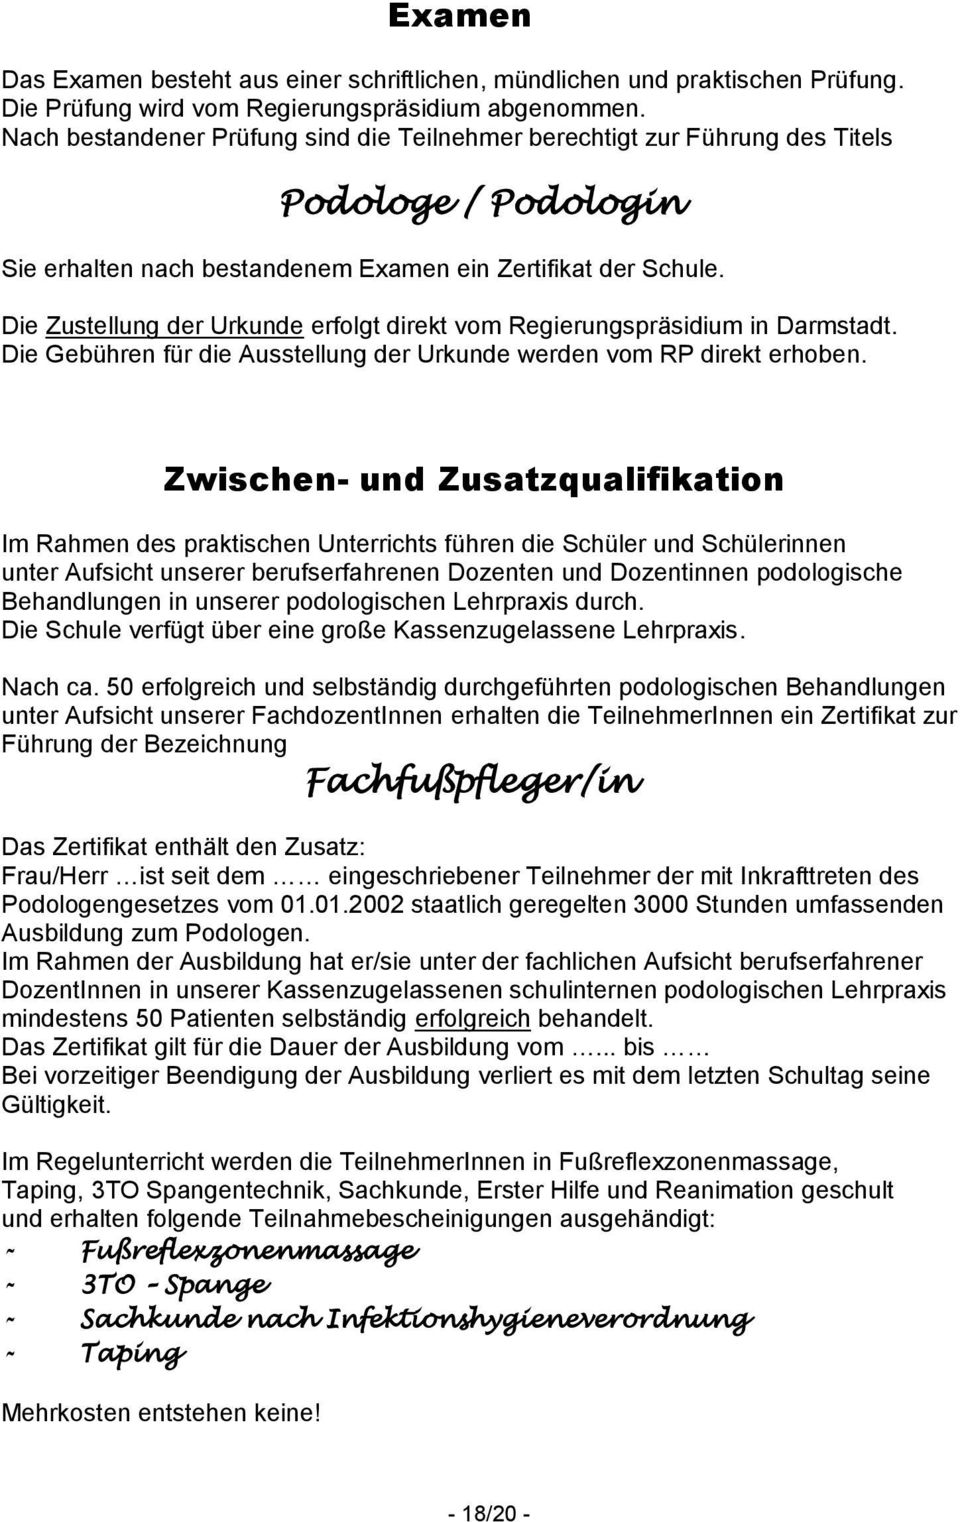 Die Zustellung der Urkunde erfolgt direkt vom Regierungspräsidium in Darmstadt. Die Gebühren für die Ausstellung der Urkunde werden vom RP direkt erhoben.